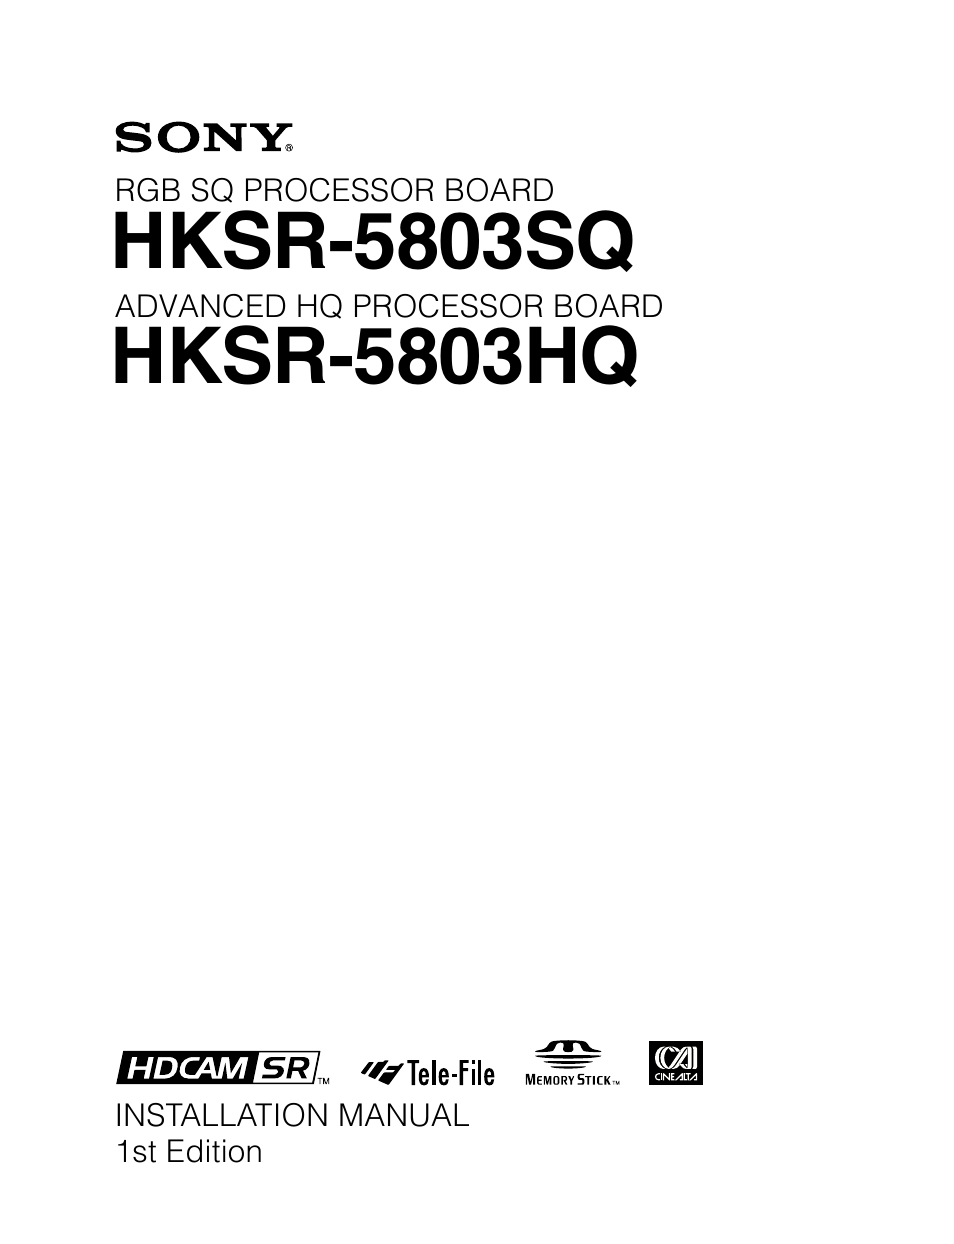 HKSR-5803HQ